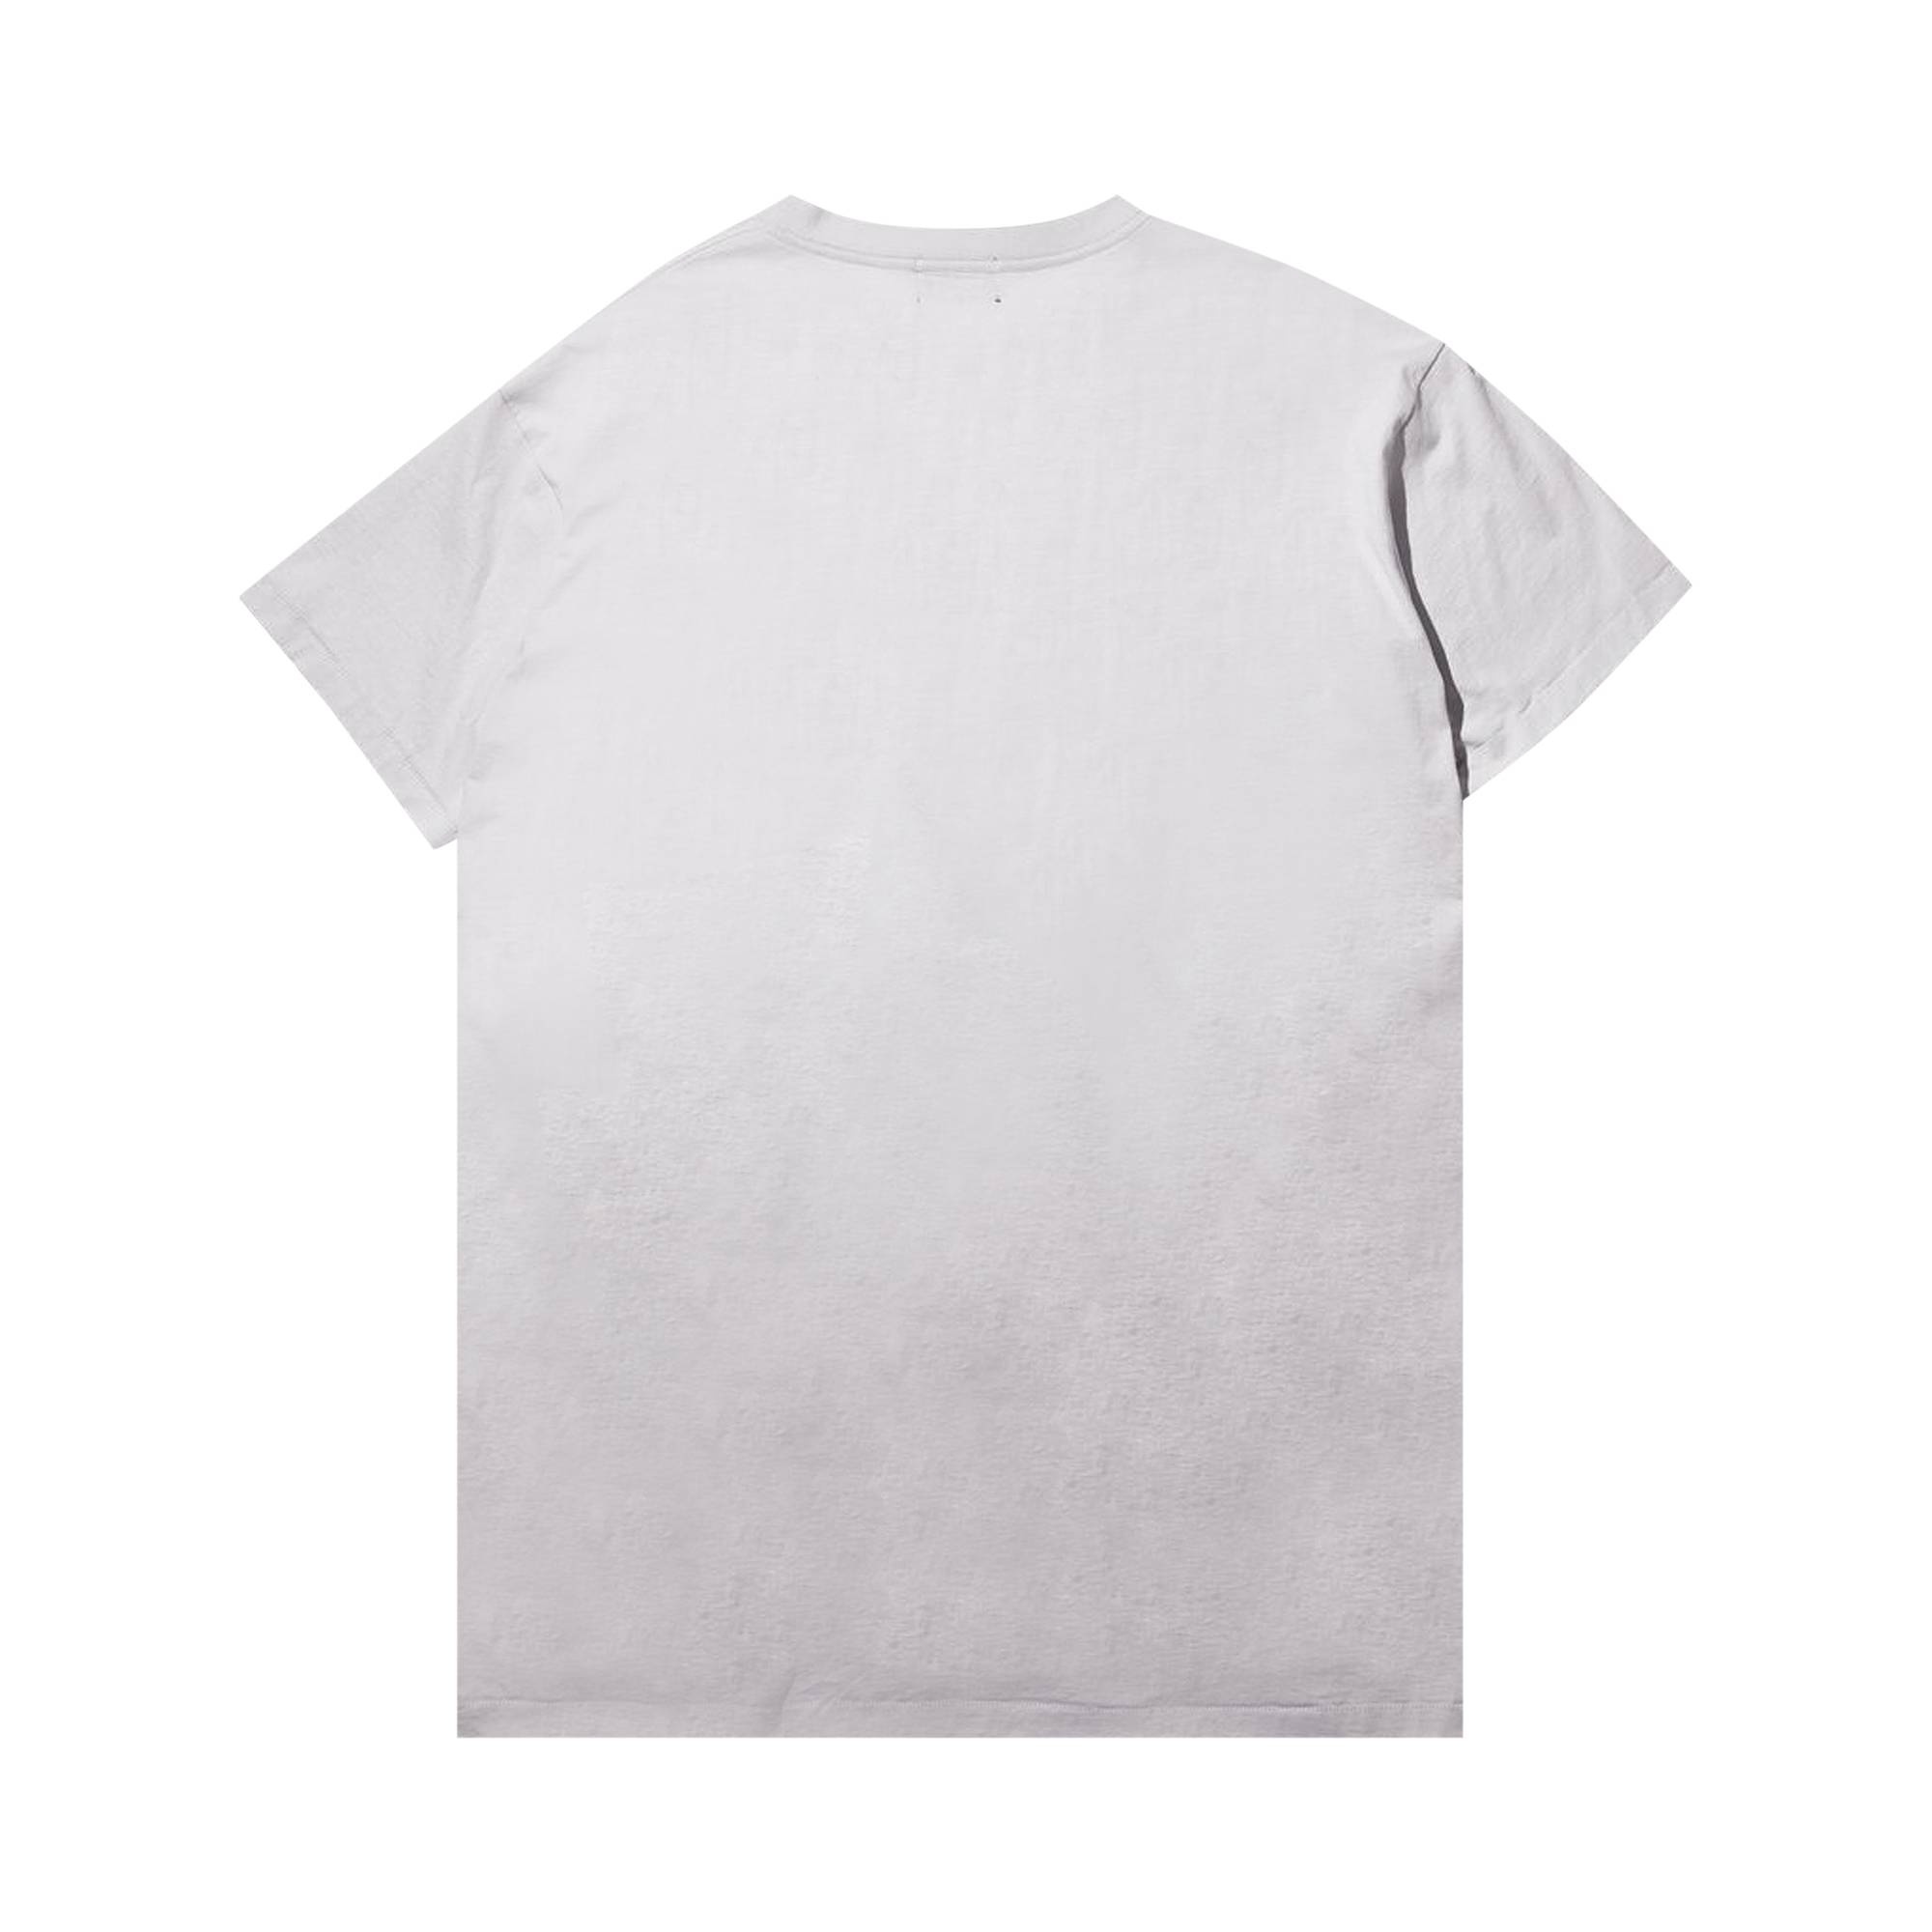 Enfants Riches Déprimés Finally Found Someone T-Shirt Dress 'White/Multicolor' - 2